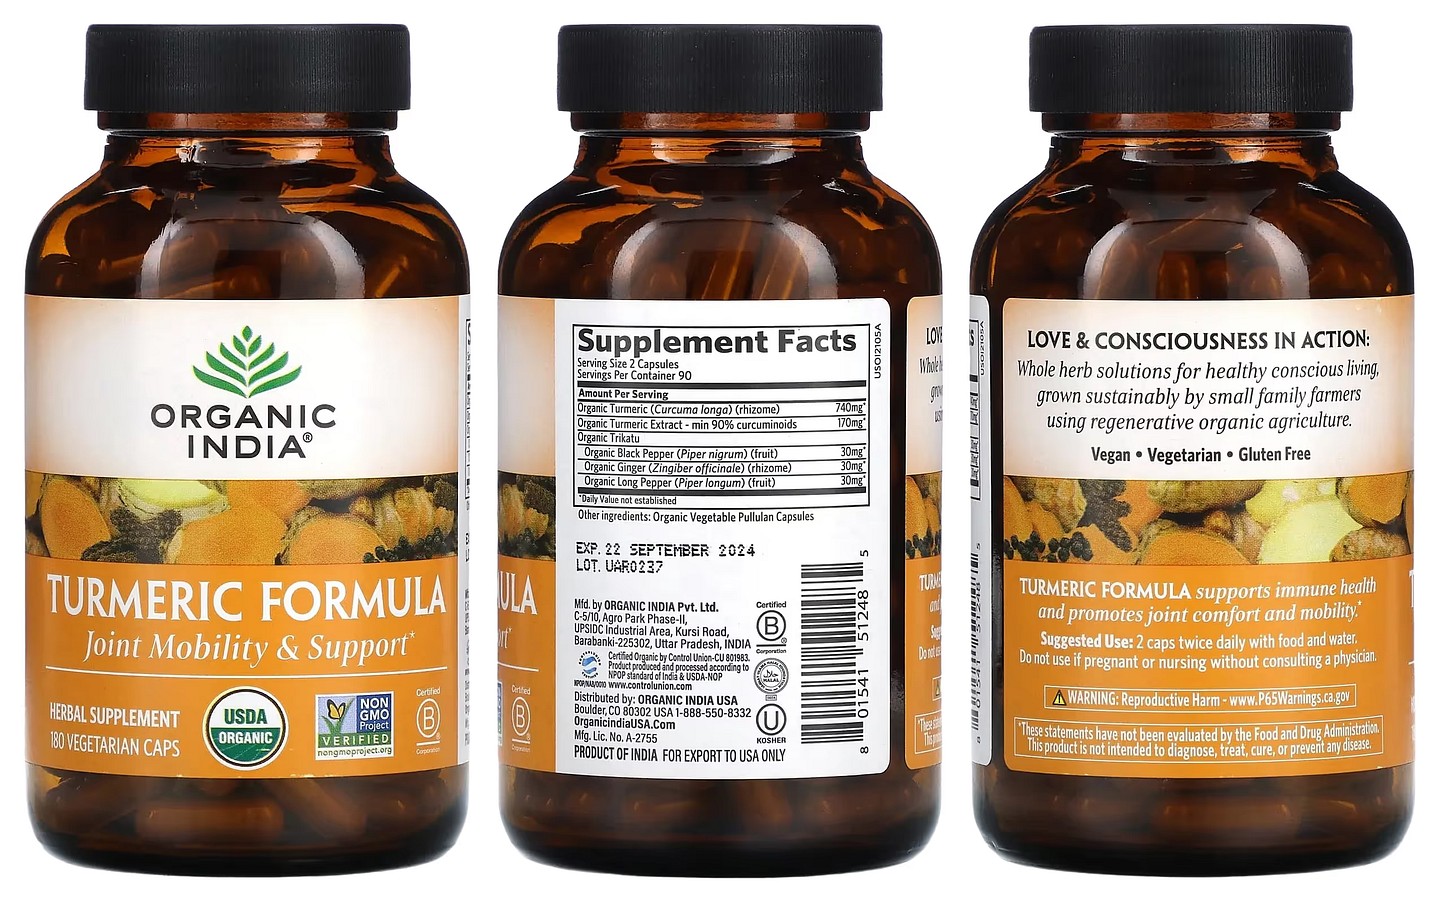 Organic India, Turmeric Formula packaging